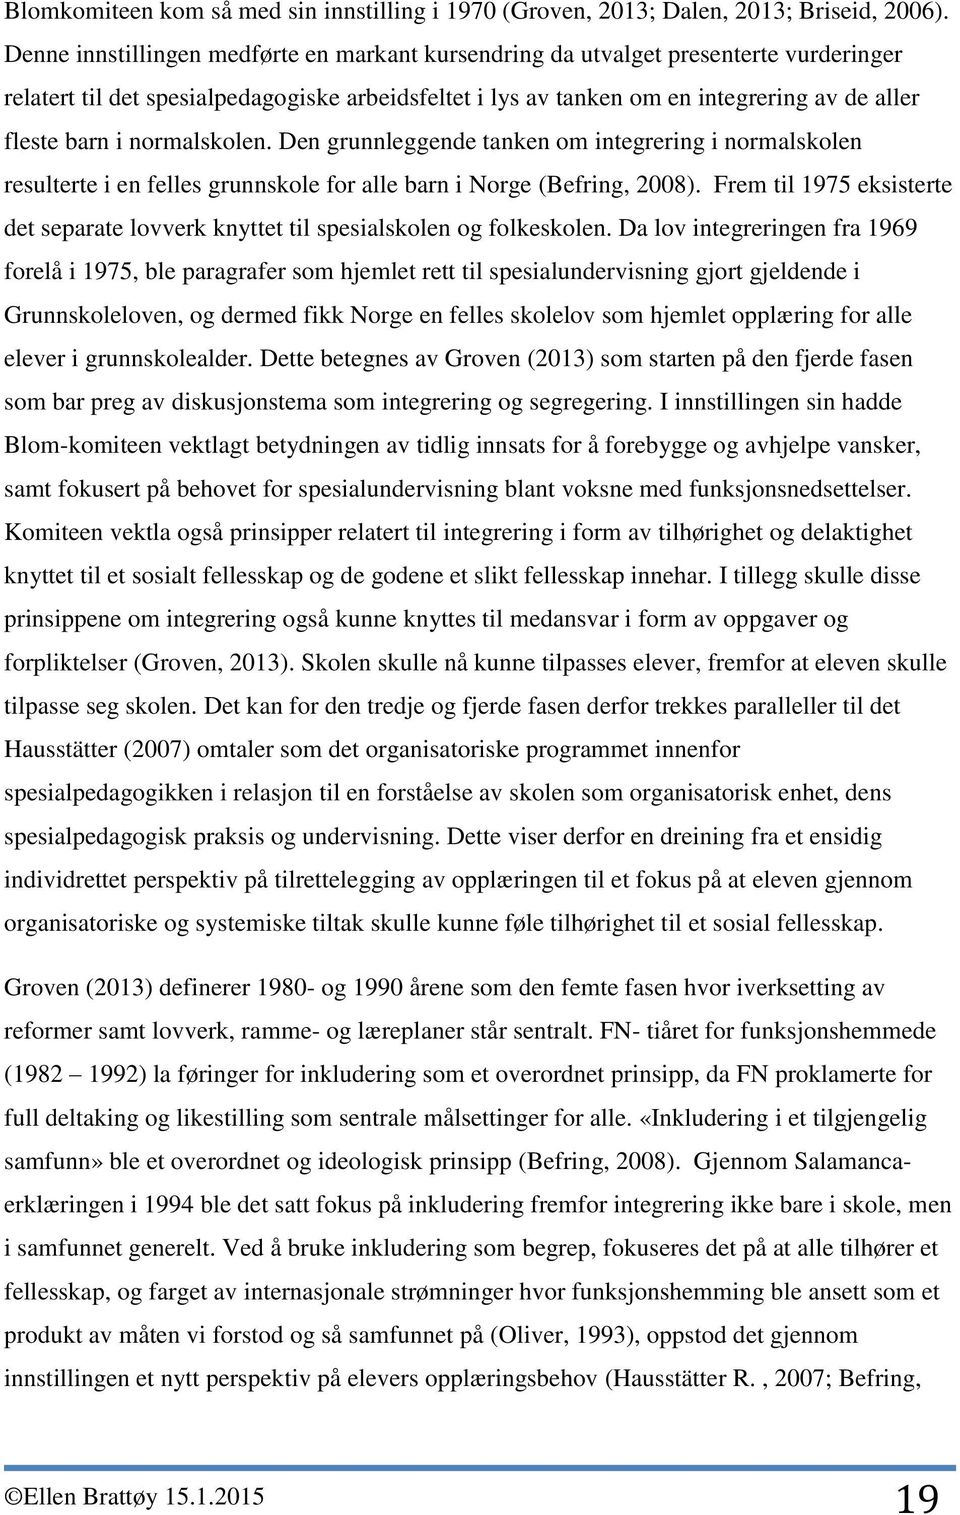 normalskolen. Den grunnleggende tanken om integrering i normalskolen resulterte i en felles grunnskole for alle barn i Norge (Befring, 2008).